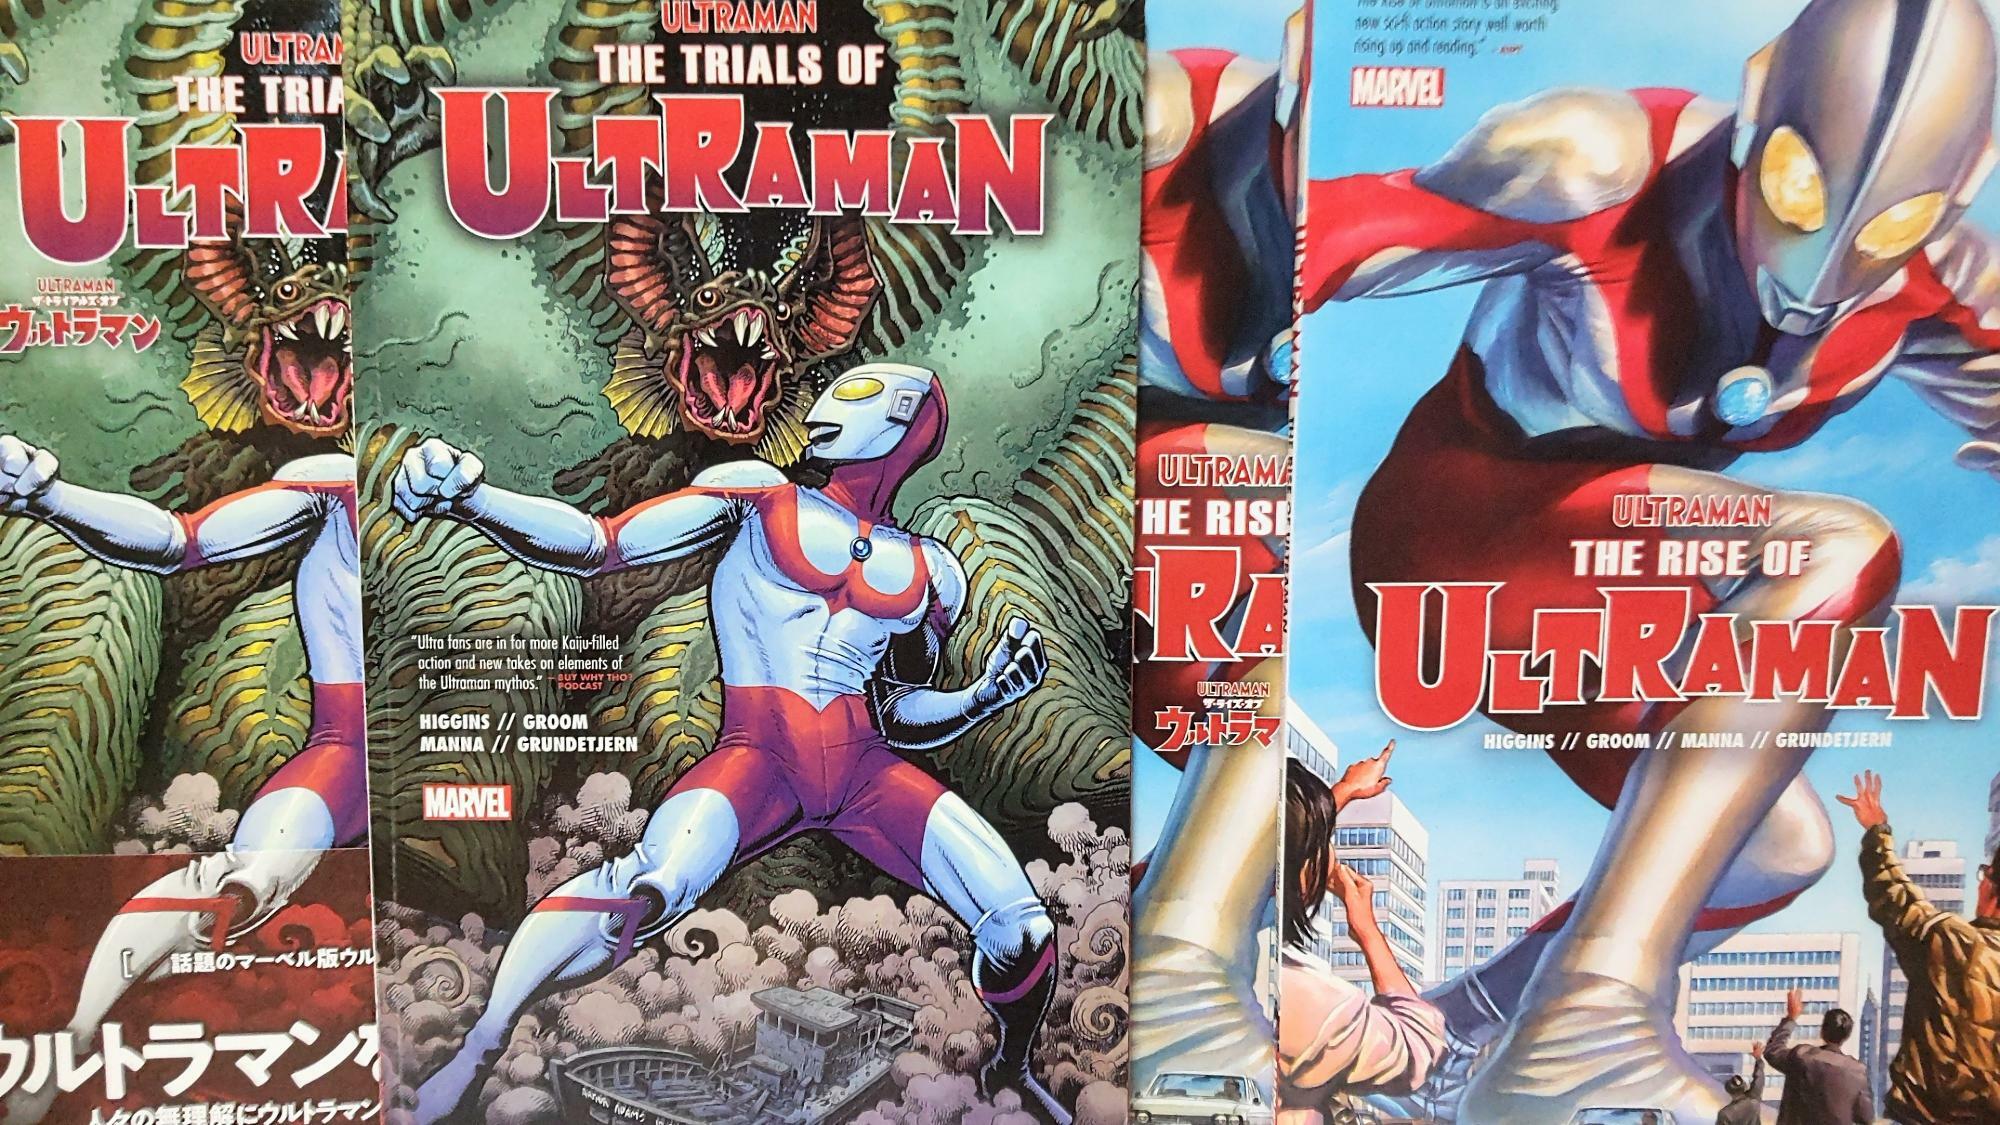 マーベル・コミックスより刊行された『ULTRAMAN』のコミックシリーズ。本作は独立した世界観を有しており、過去のウルトラマンシリーズを未見の方でも気軽に読破できるのが特徴である（筆者撮影）。